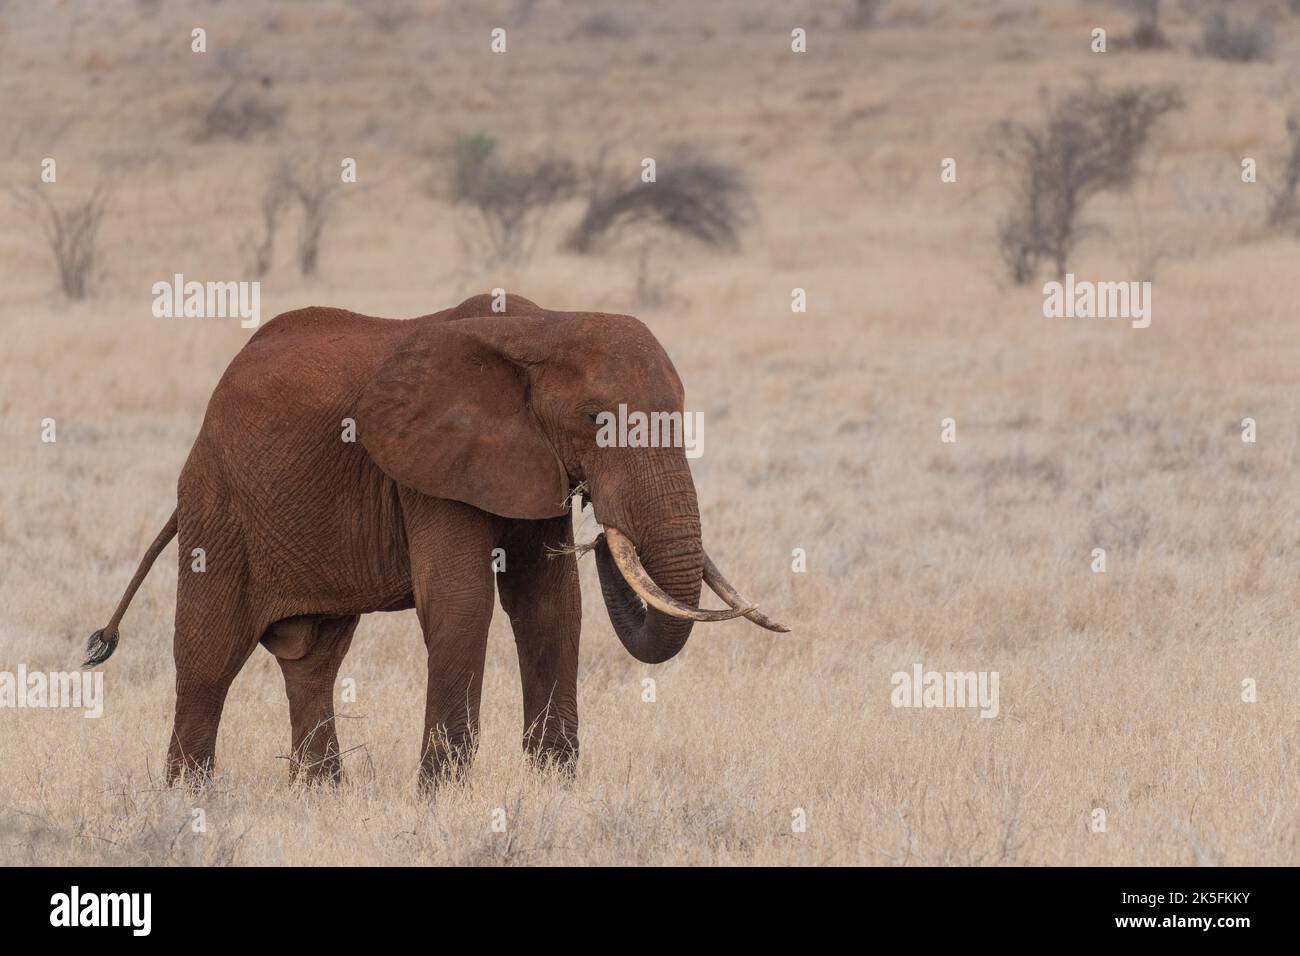 Elefante Africano, Loxodonta africana, Elephantidae, Parque Nacional Tsavo Este, Kenia, África Foto de stock